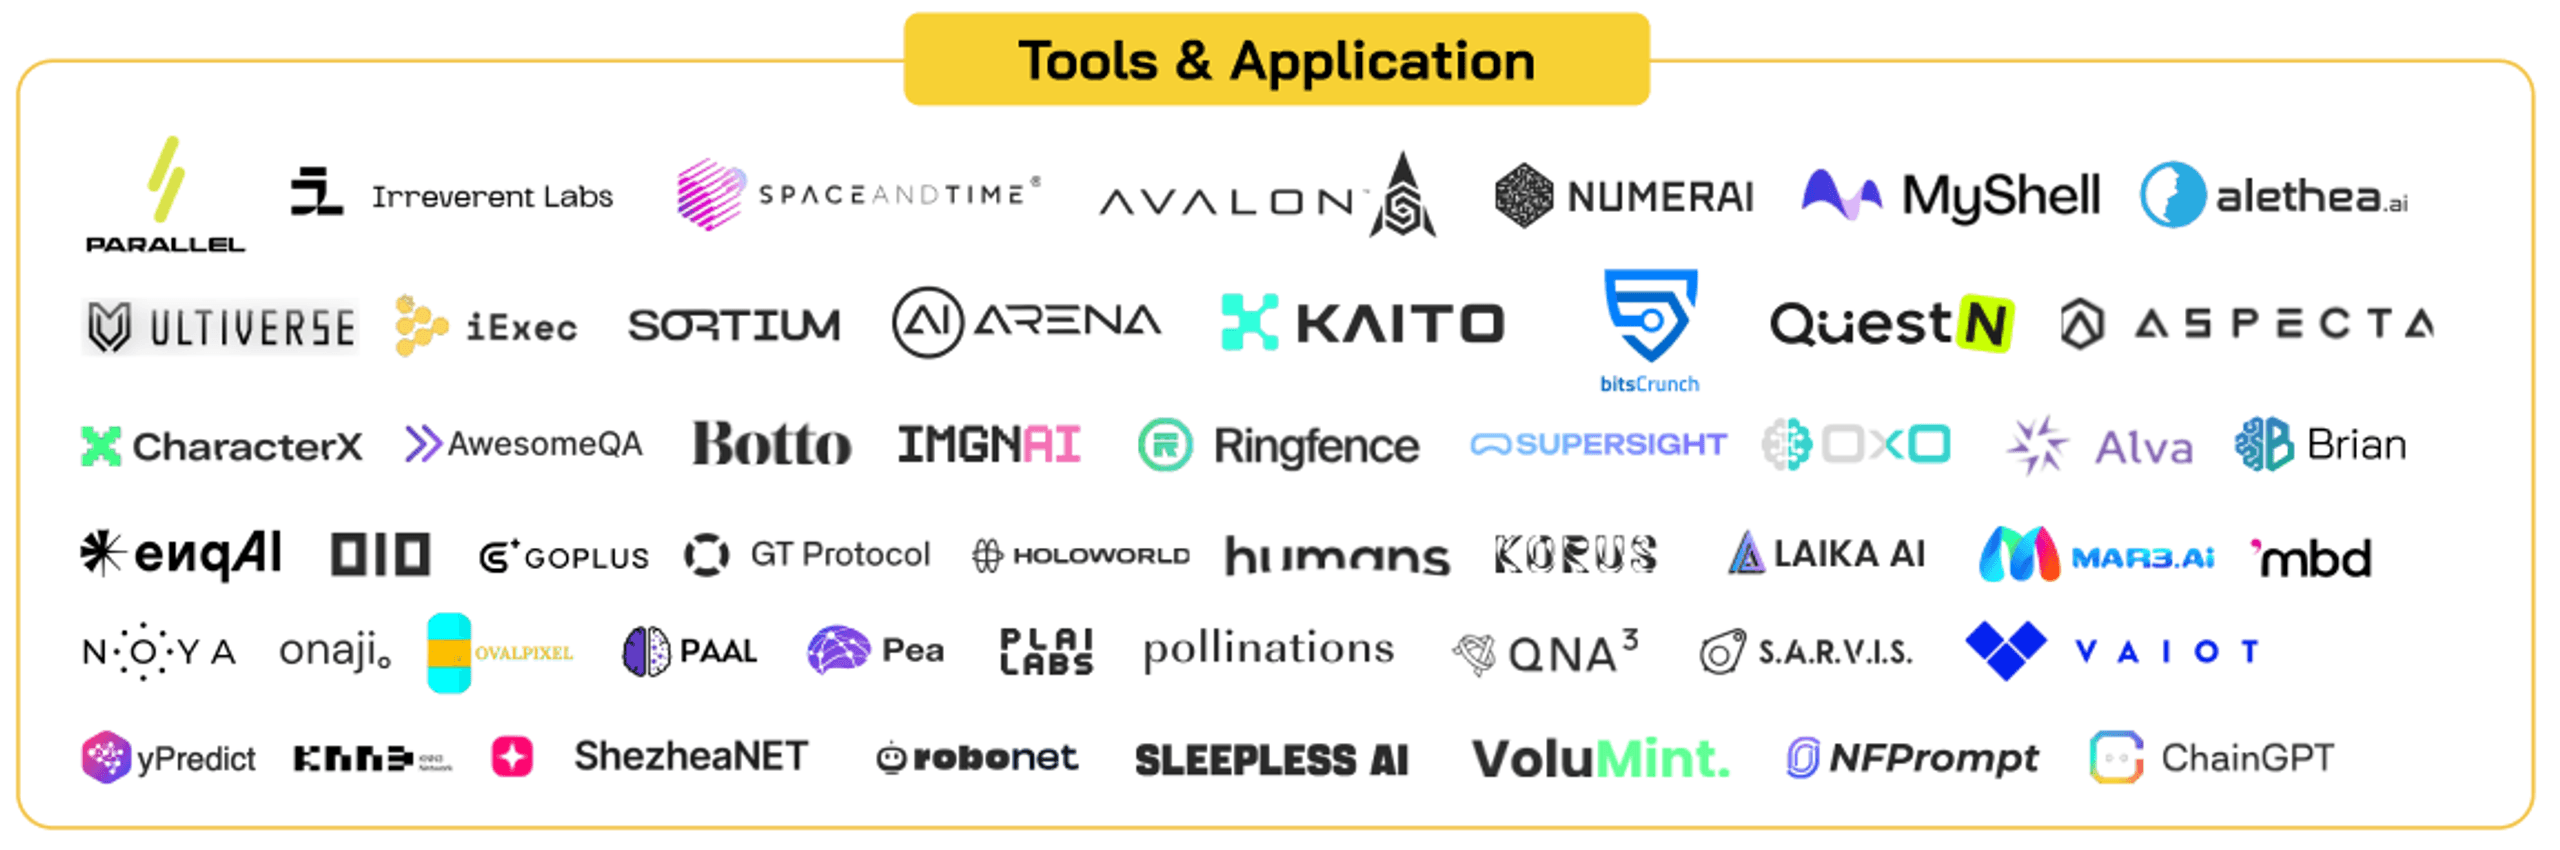 dự án tools và application trong ai